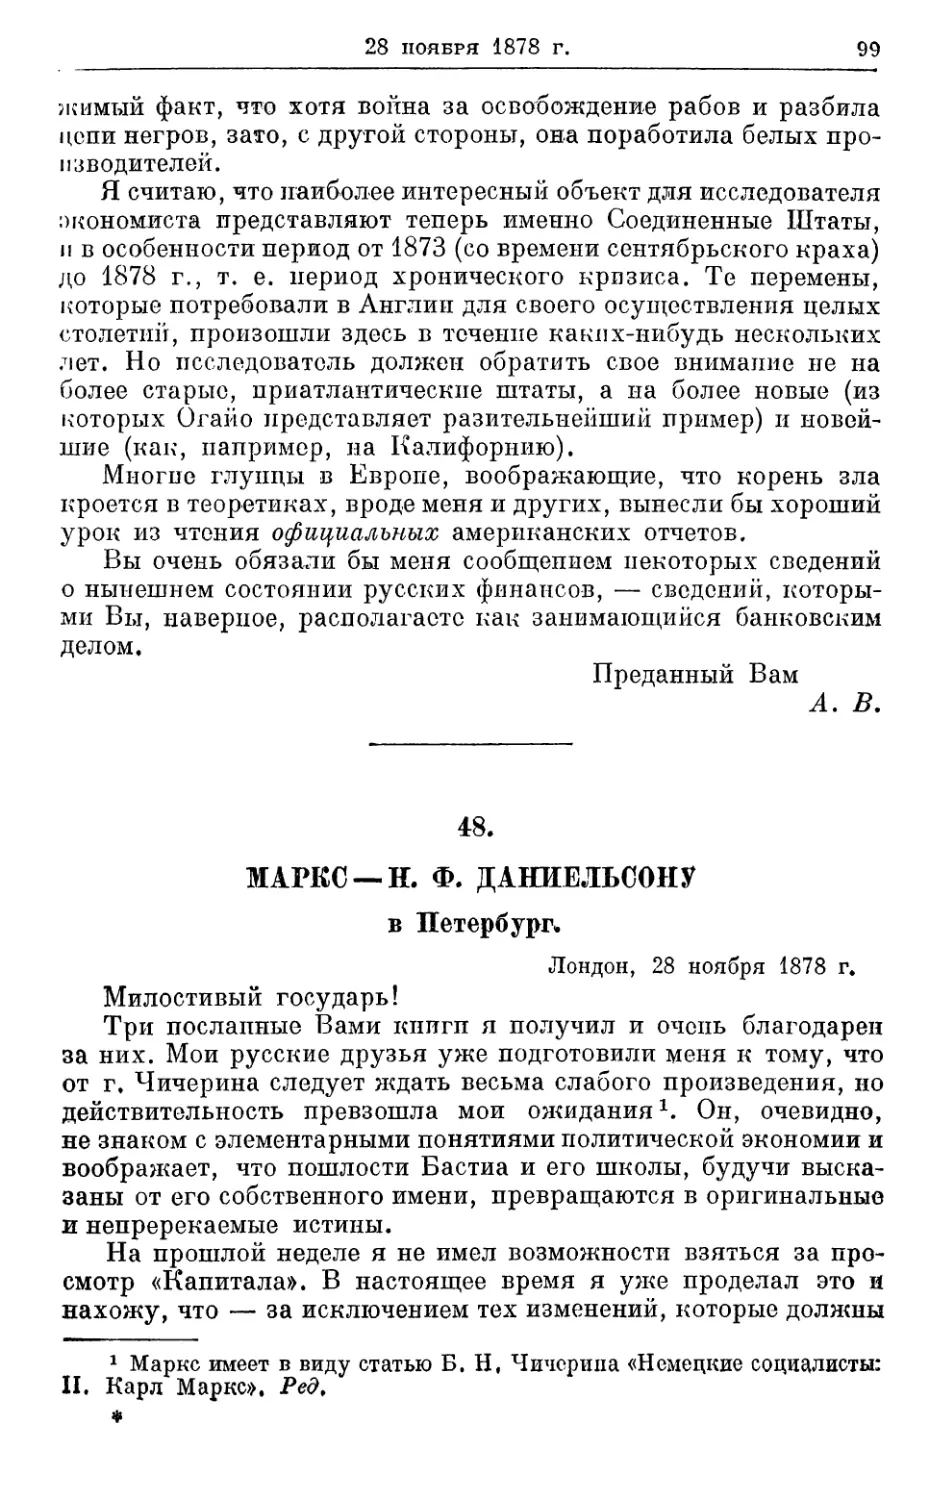 48. Маркс — Н. Ф. Даниельсону, 28 ноября 1878г